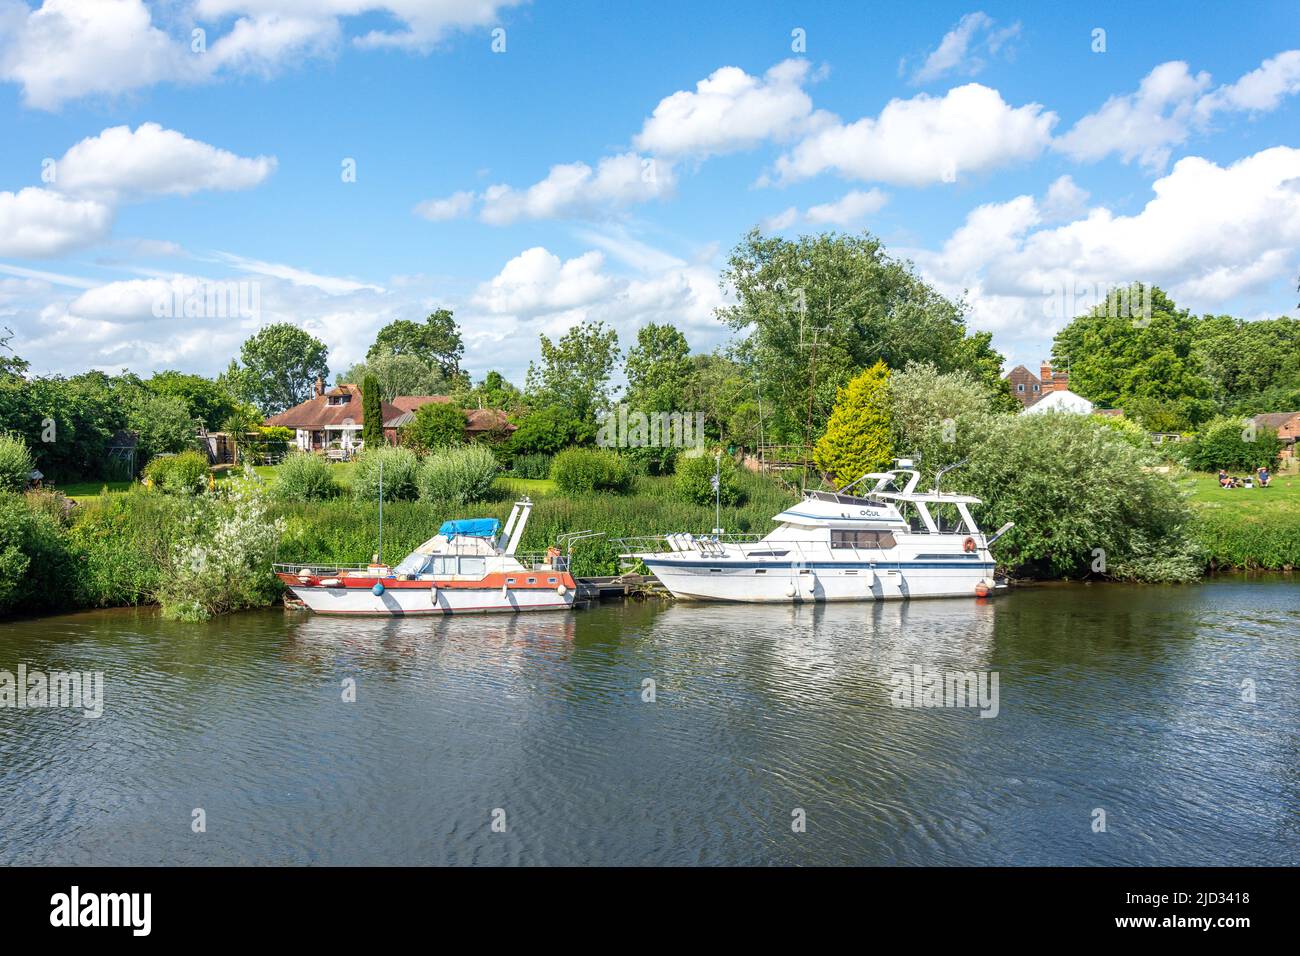 Propriétés et bateaux en bord de rivière Severn, Upton-upon-Severn, Worcestershire, Angleterre, Royaume-Uni Banque D'Images